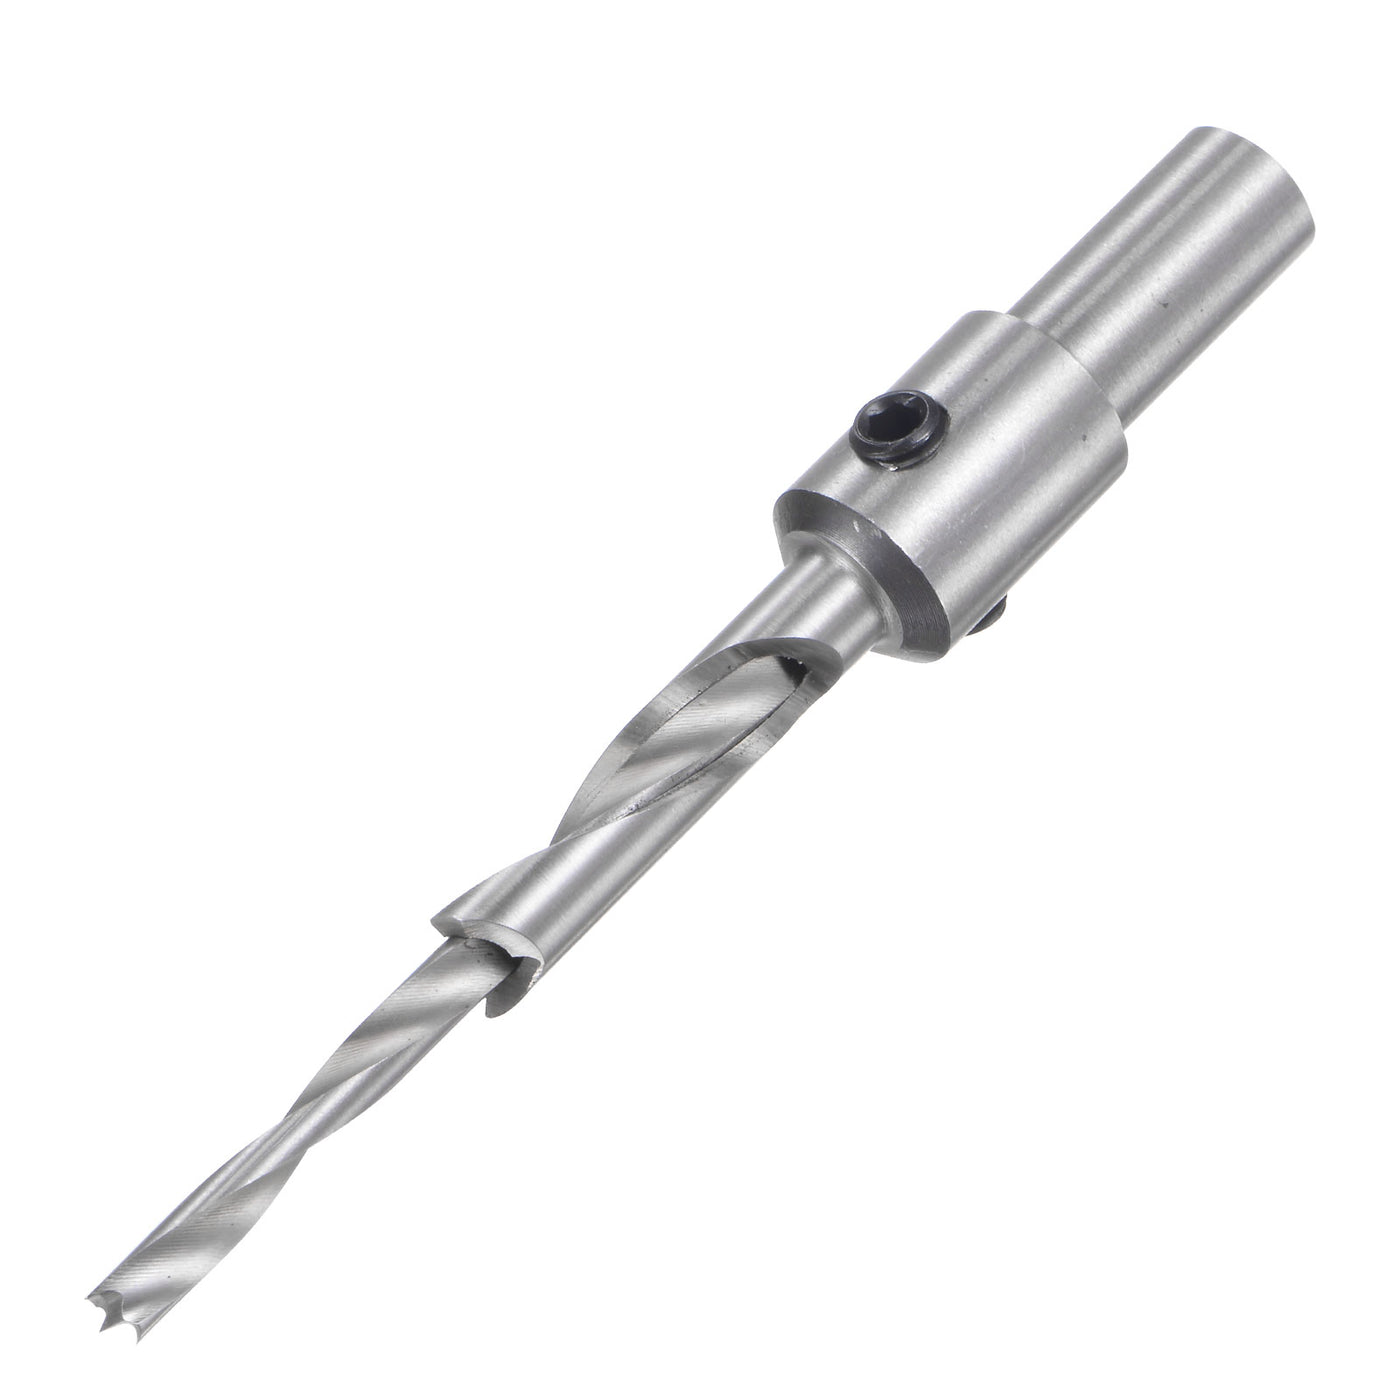 Uxcell Uxcell Countersink Drill Bit 3 x 9 x 100mm HSS High-Speed Steel Adjustable Reamer